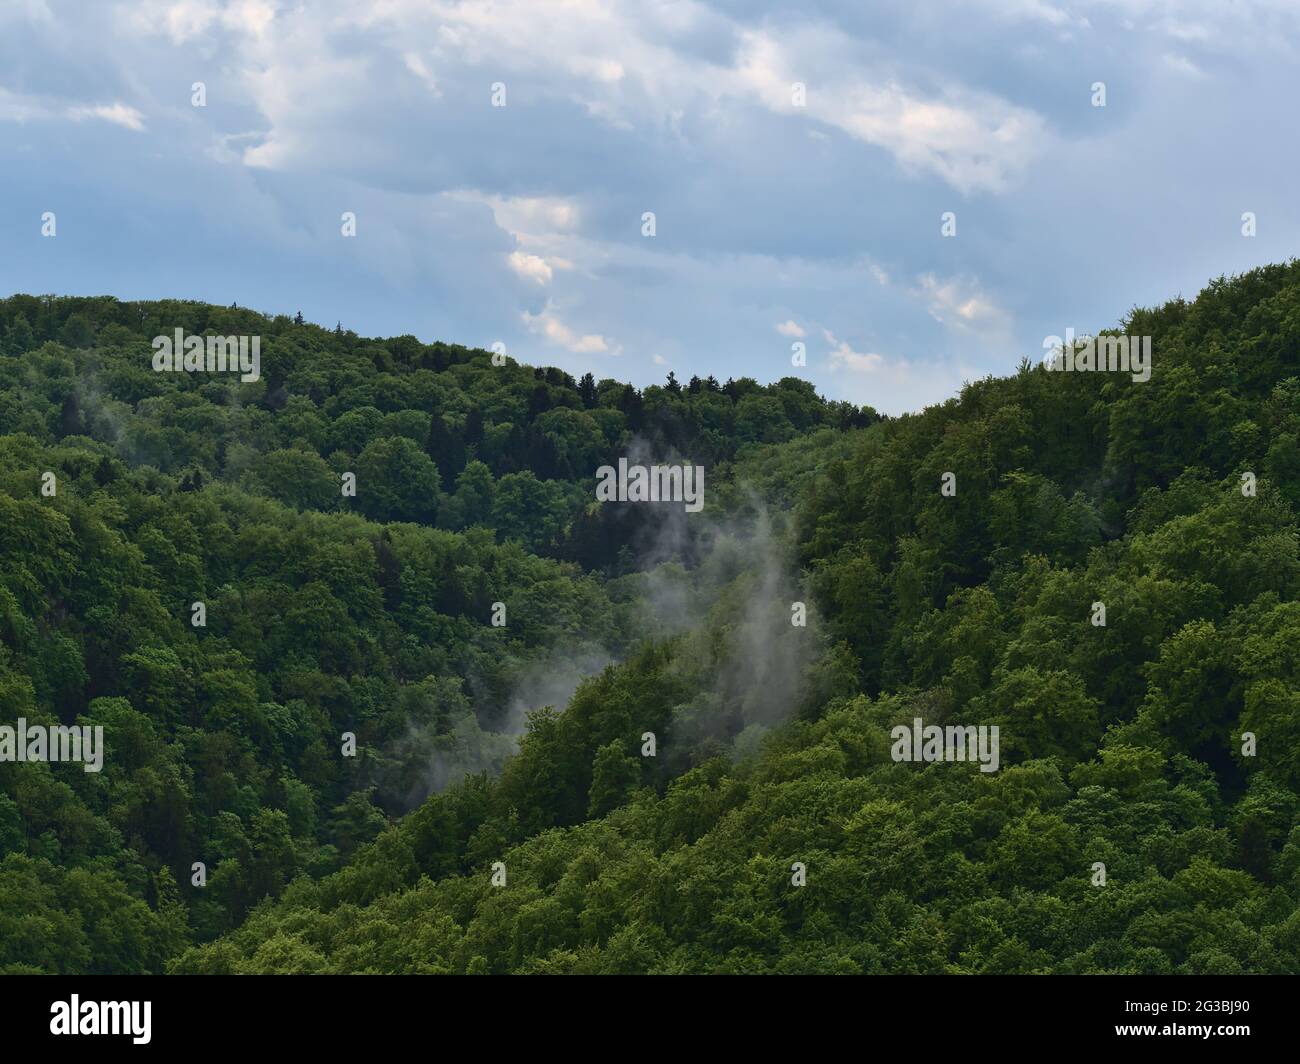 Paesaggio forestale con aria umida e nebbia in aumento dopo forte pioggia estiva sulle colline dell'Alb Svevo vicino a Lichtenstein, Germania con alberi verdi. Foto Stock